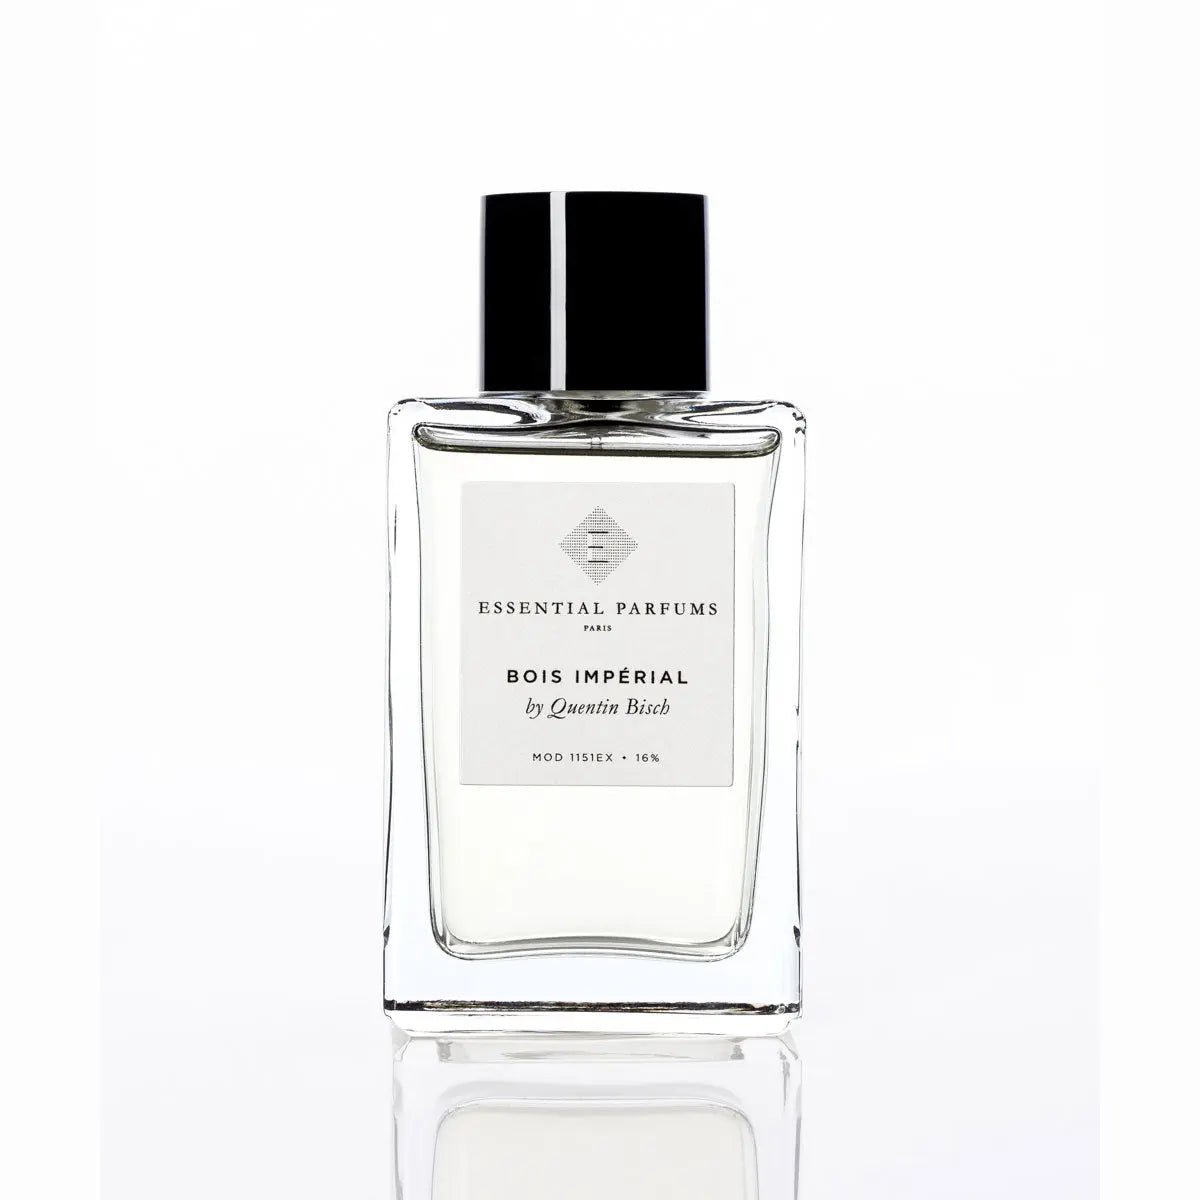 Essential parfums Bois Imperial eau de parfum - 150 ml refill